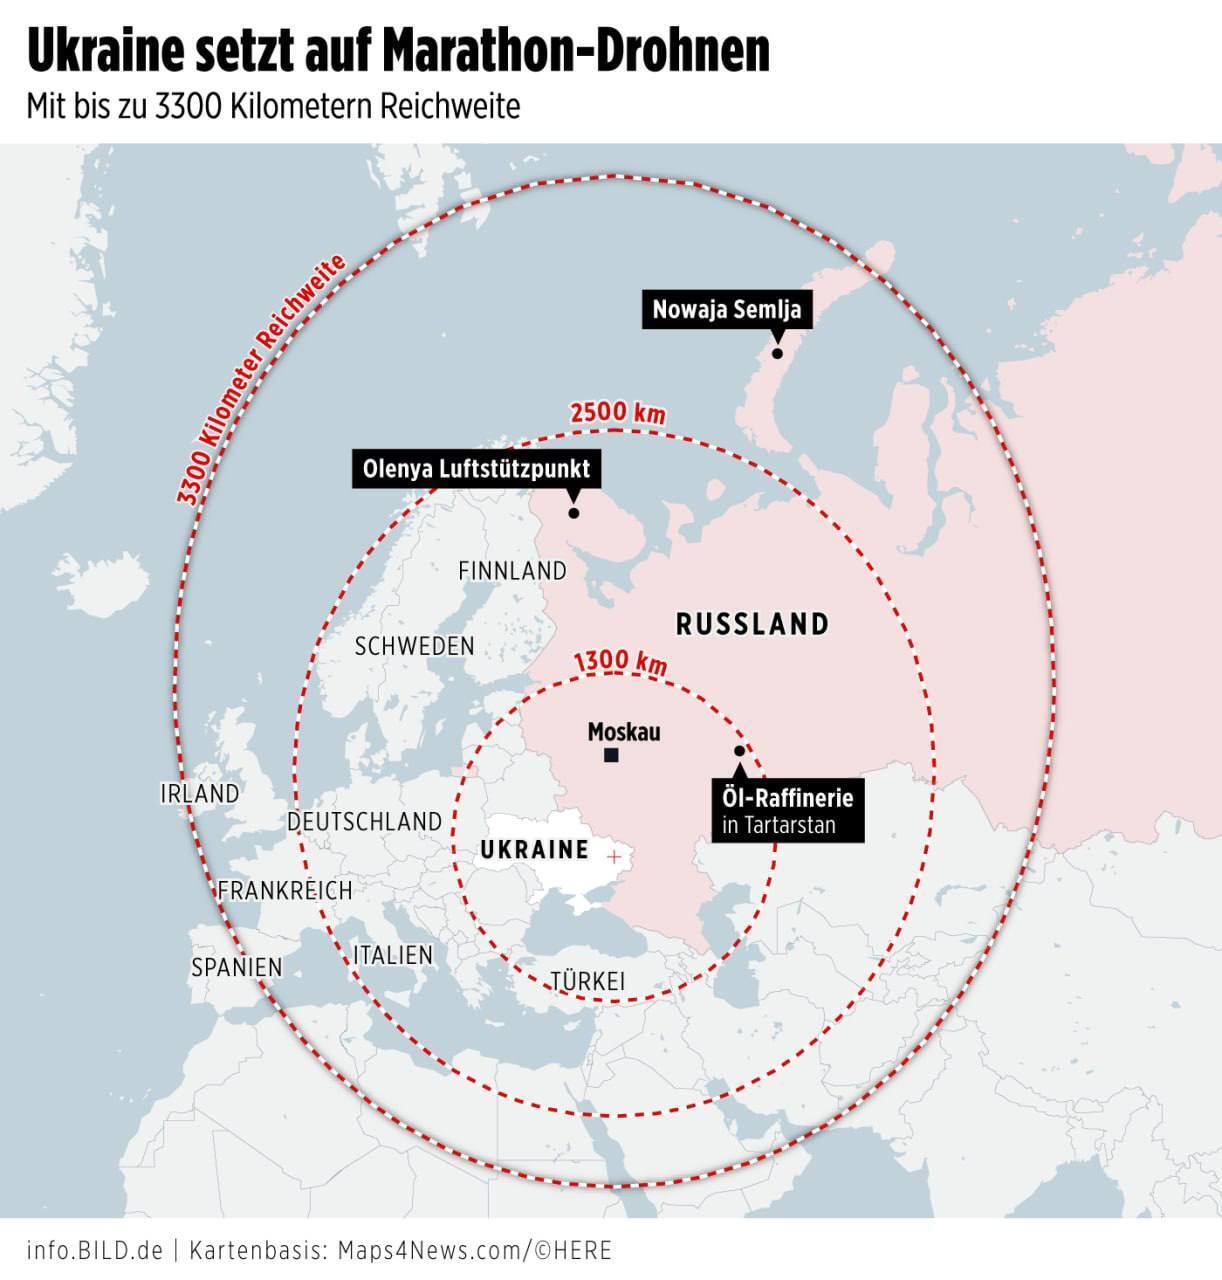 С дальностью до 2000 км и больше: Украина может применить дальнобойные БПЛА, способные атаковать Урал и Заполярье – BILD